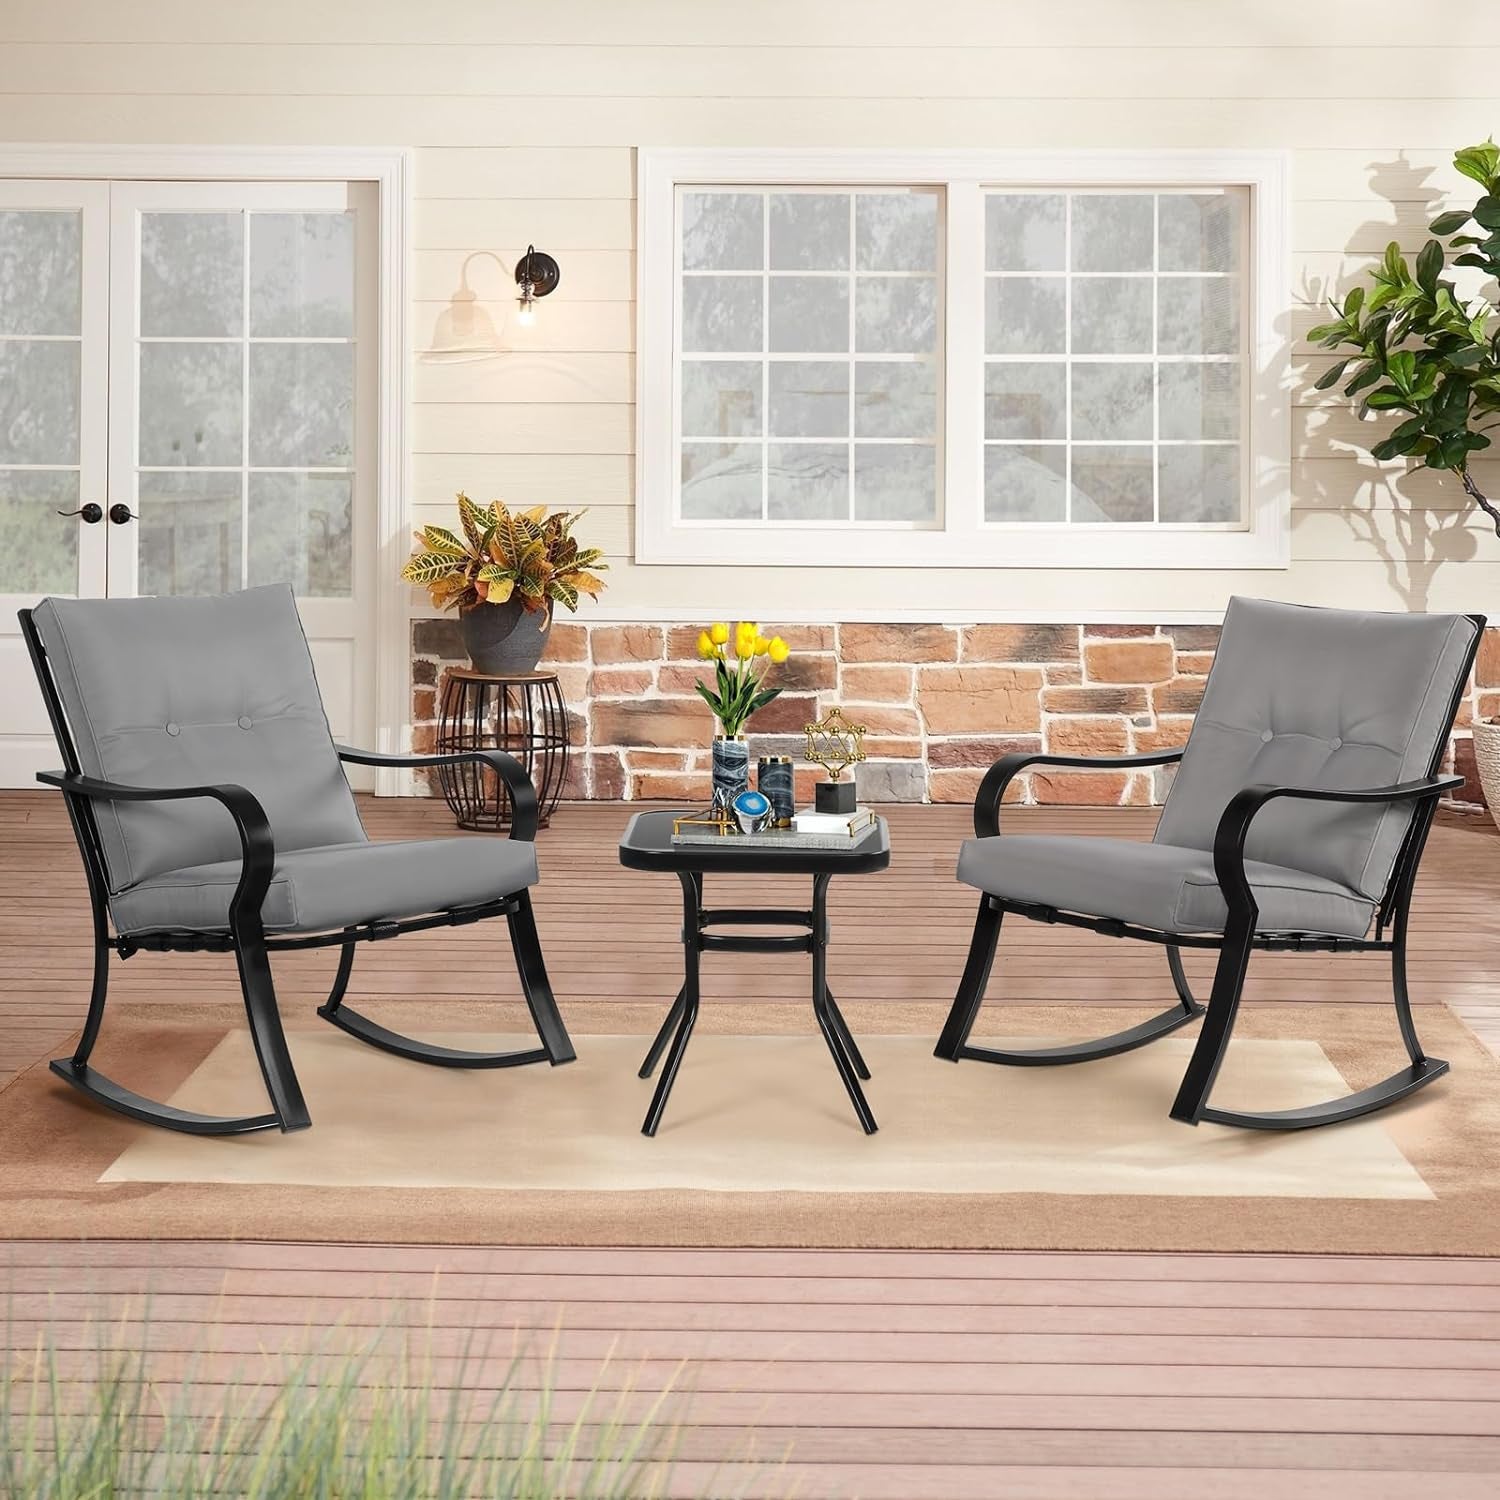  3-Piece Outdoor Rocking Chairs Bistro Set